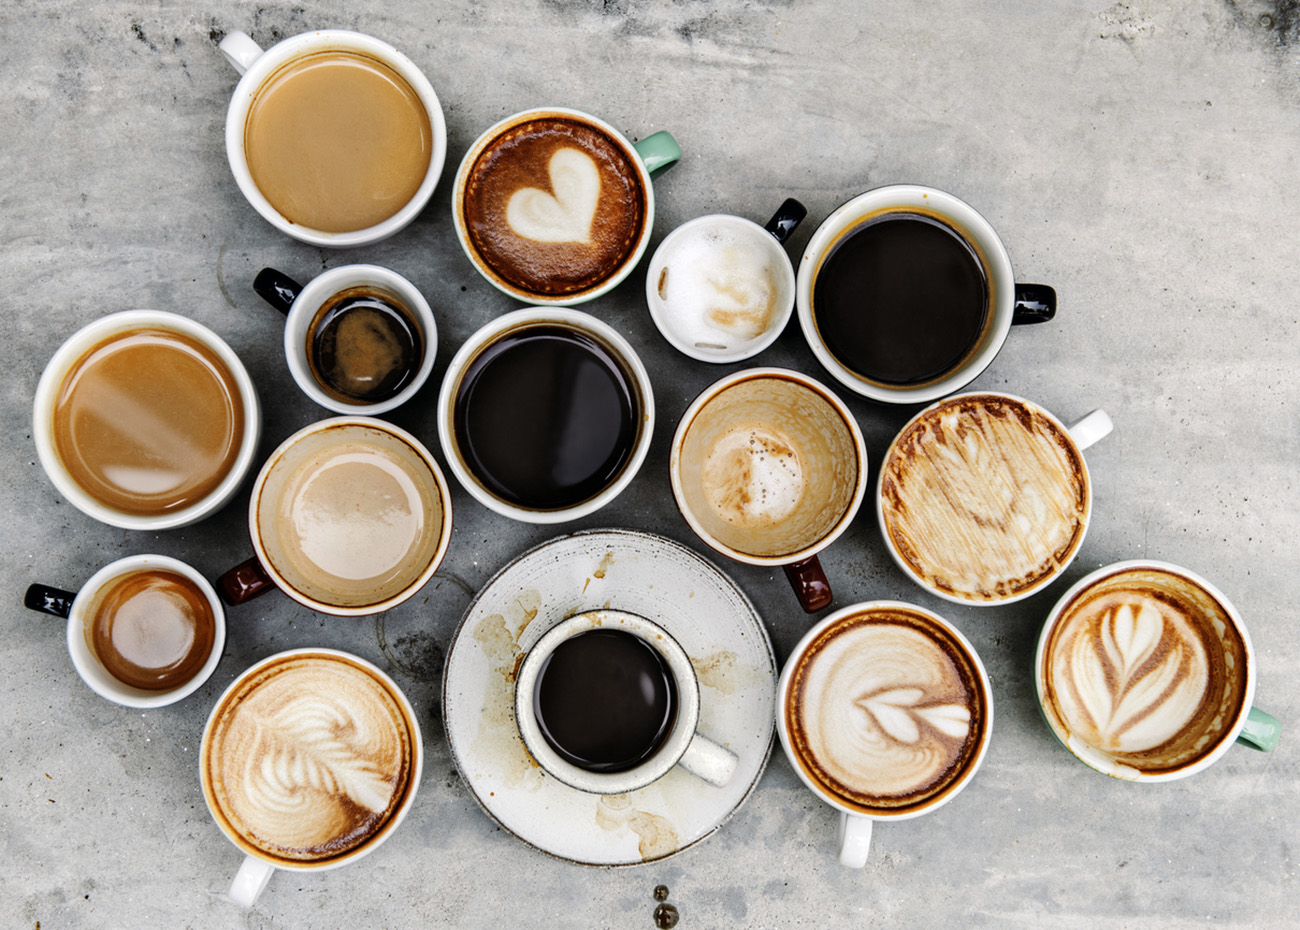 Αυτοί που πίνουν έτσι τον καφέ τους, αδυνατίζουν πιο εύκολα – Τι λένε οι διατροφολόγοι